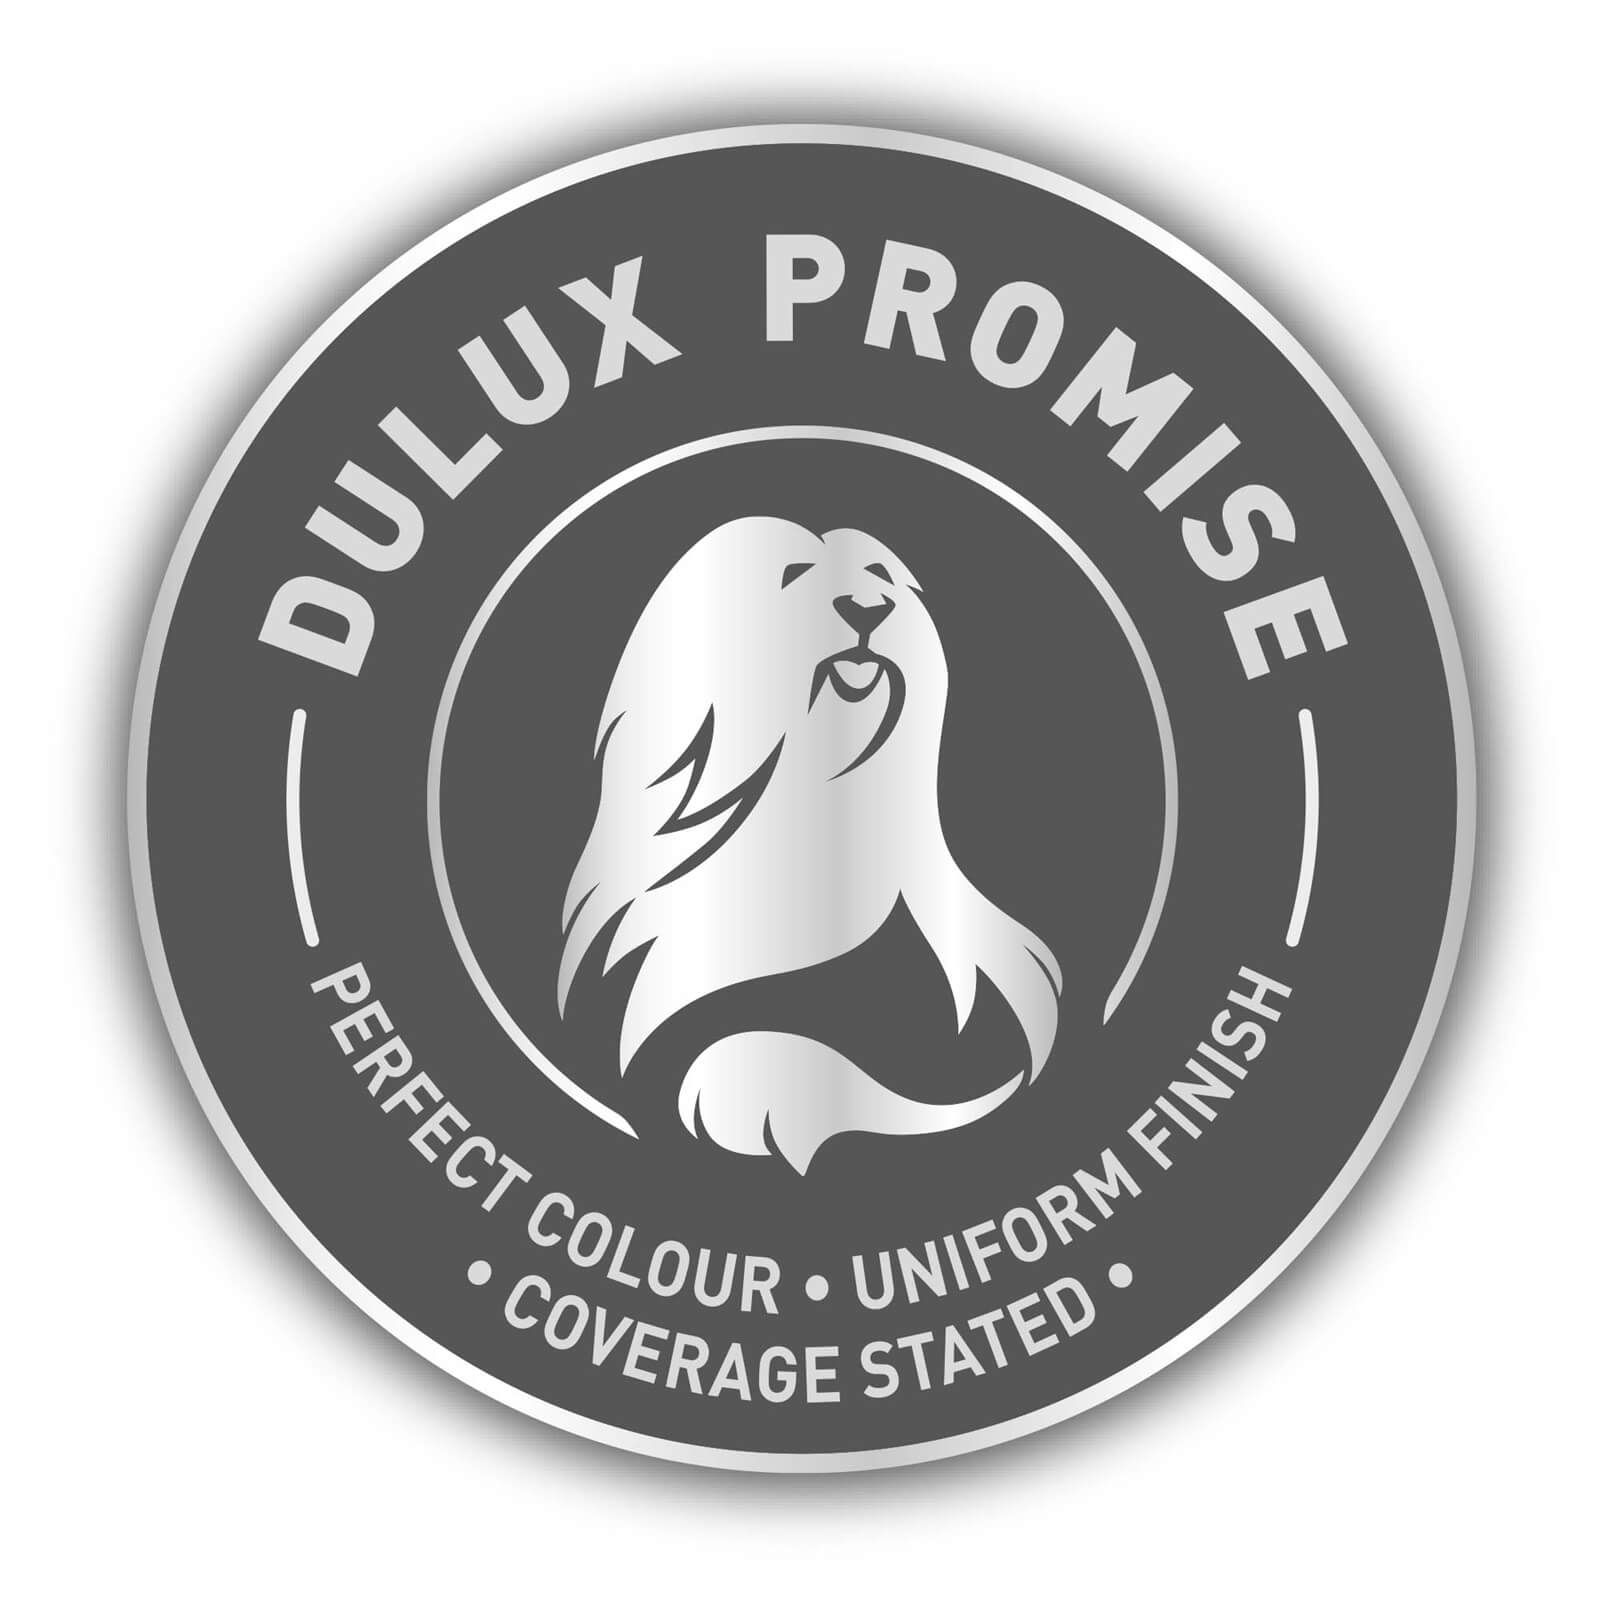 Dulux Silk Emulsion Paint Chic Shadow - 5L